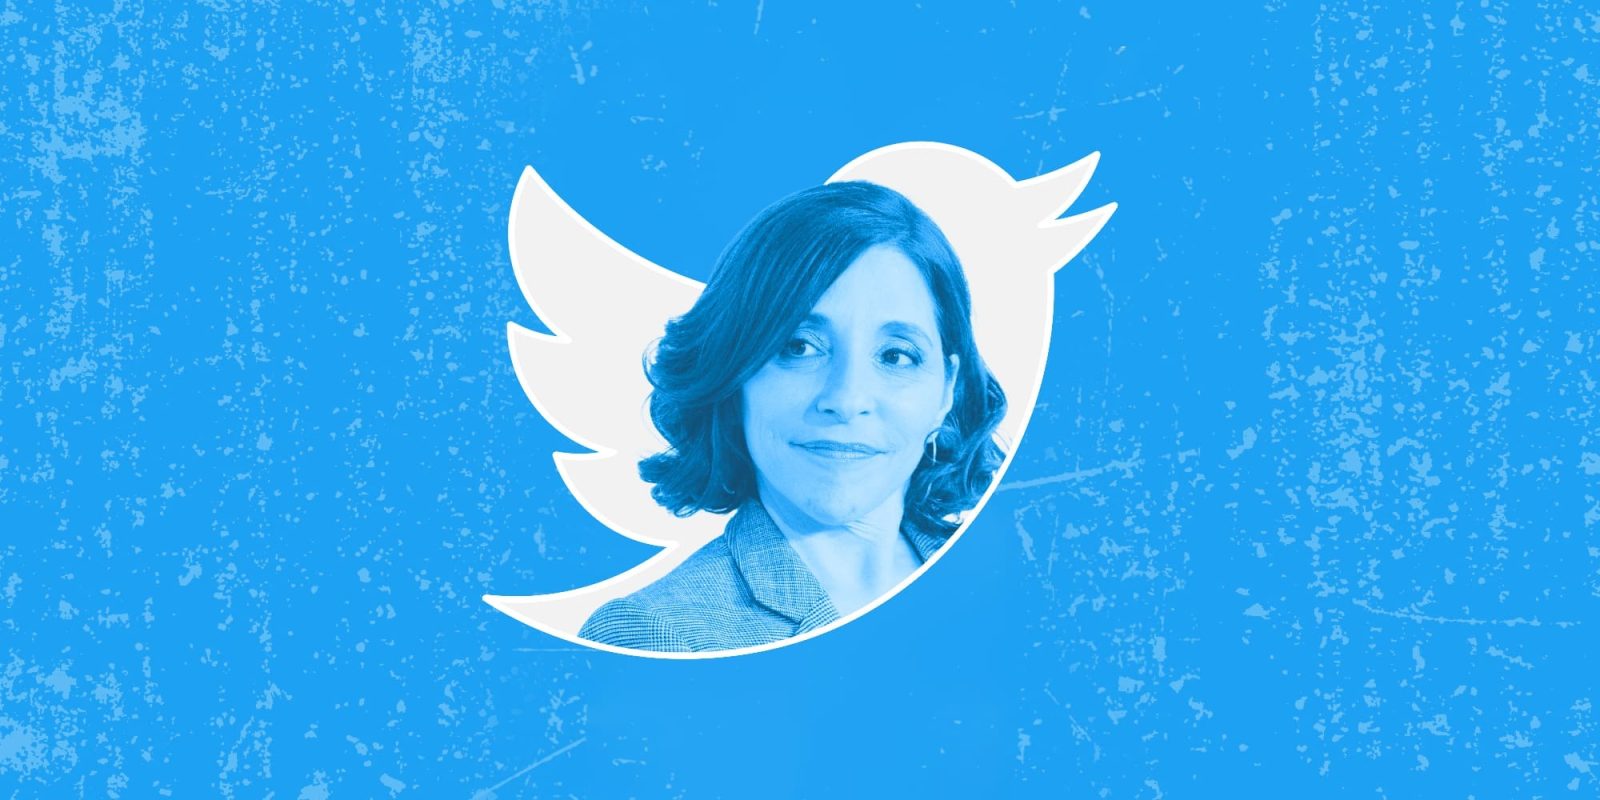 New Twitter CEO is Linda Yaccarino